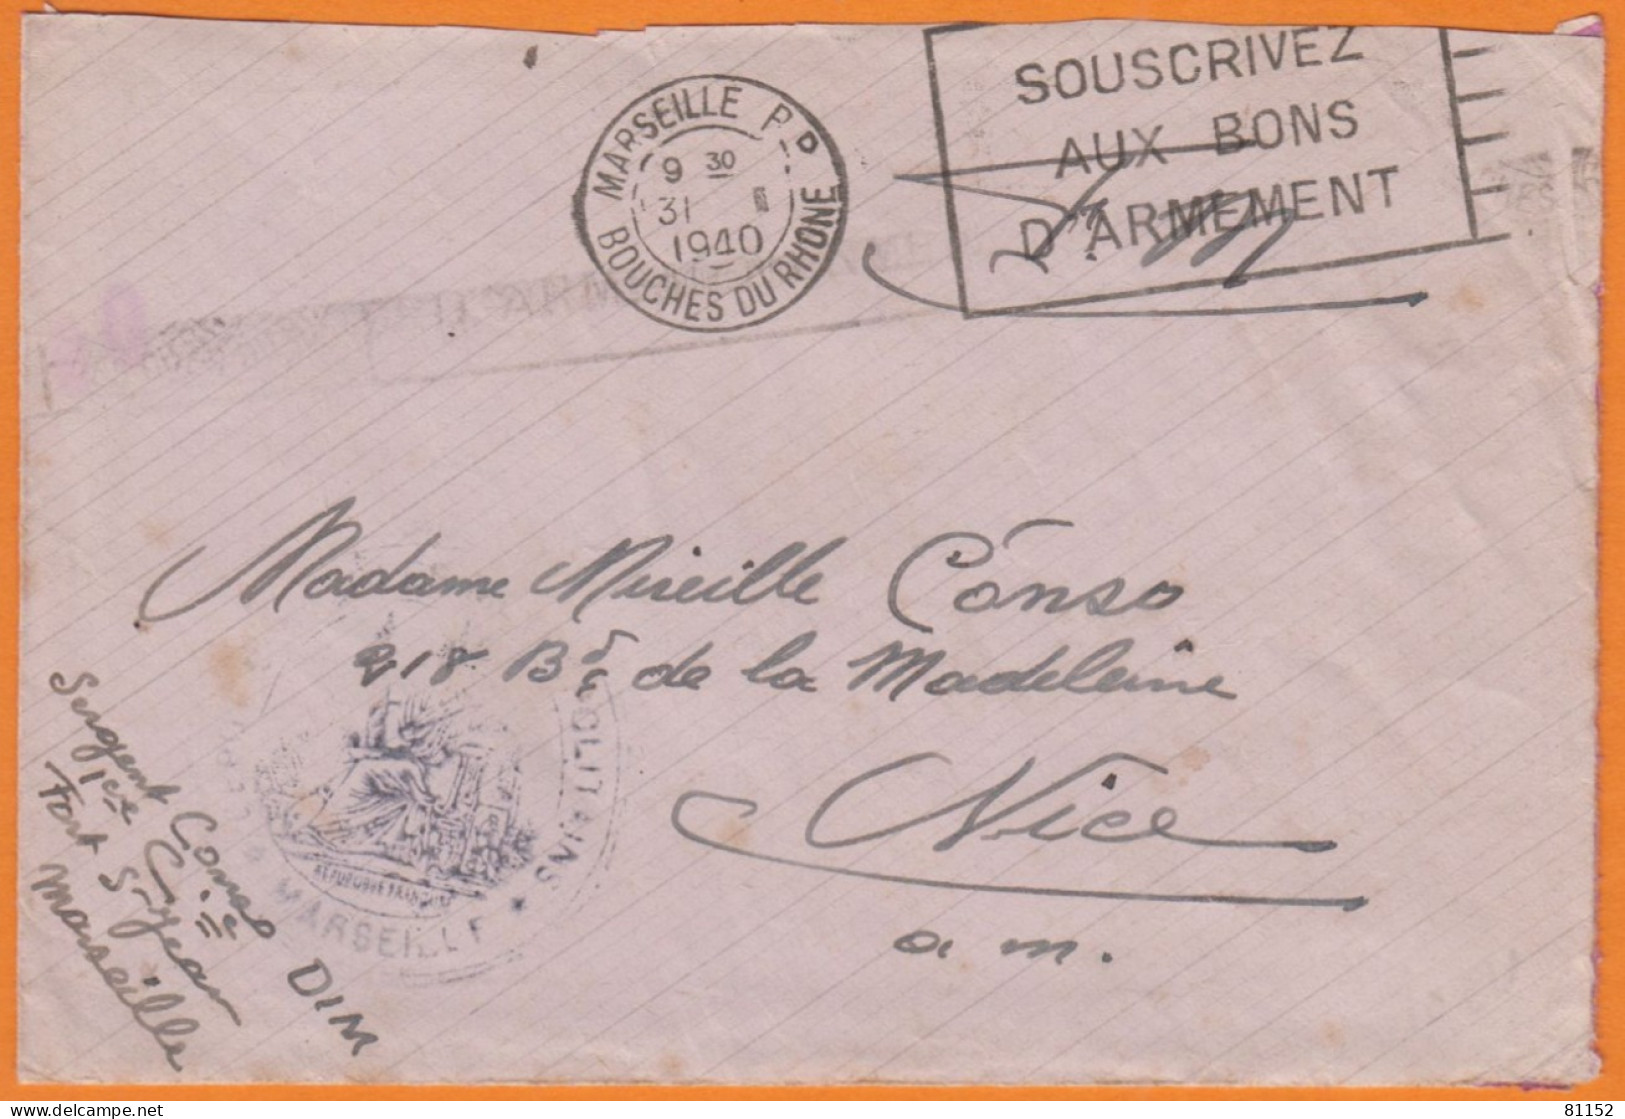 Flier " SOUSCRIVEZ  AUX BONS D'ARMEMENT " Sur Lettre En F.M.avec Courrier D'un SERGENT 1940 De MARSEILLE - Mechanical Postmarks (Other)